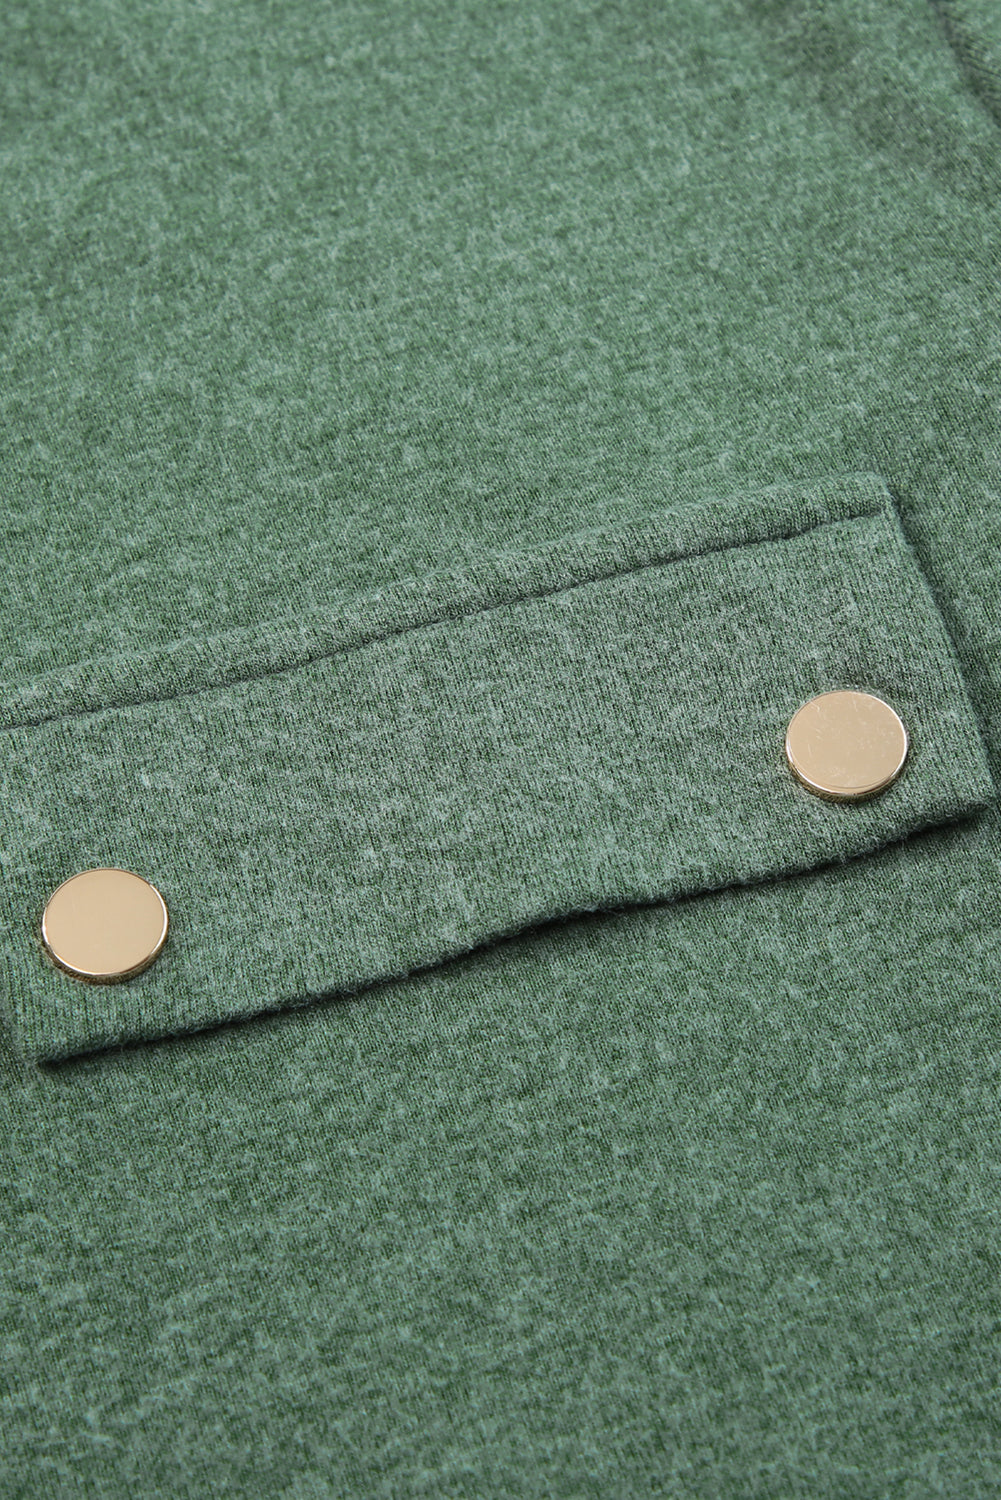 Majica s dugim rukavima i kopčanjem na dugmad u boji magle zelene boje